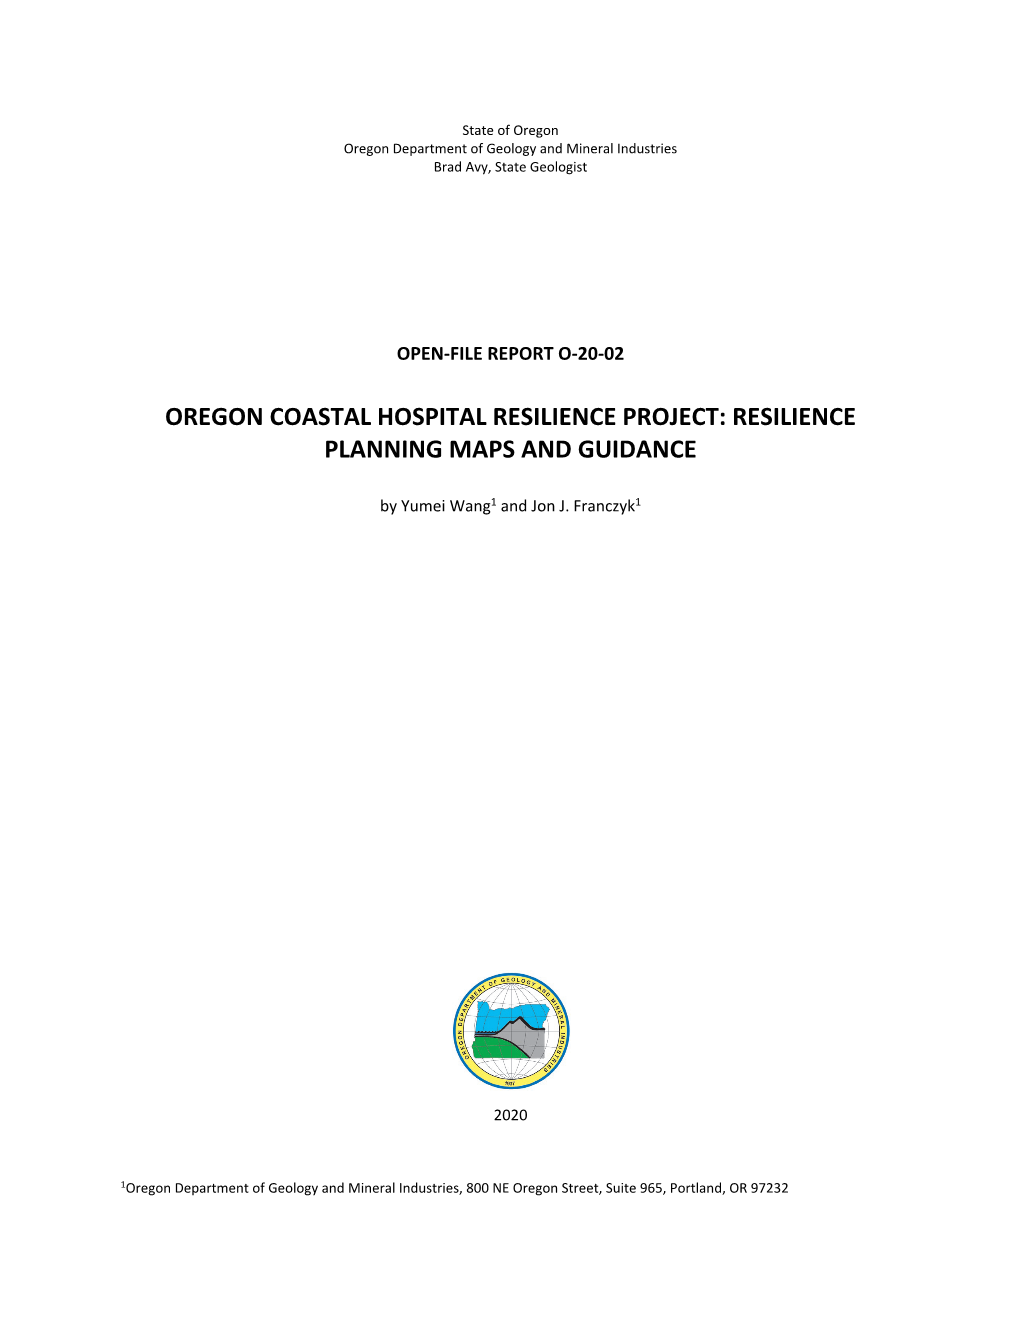 DOGAMI Open-File Report O-20-02, Oregon Coastal Hospital Resilience